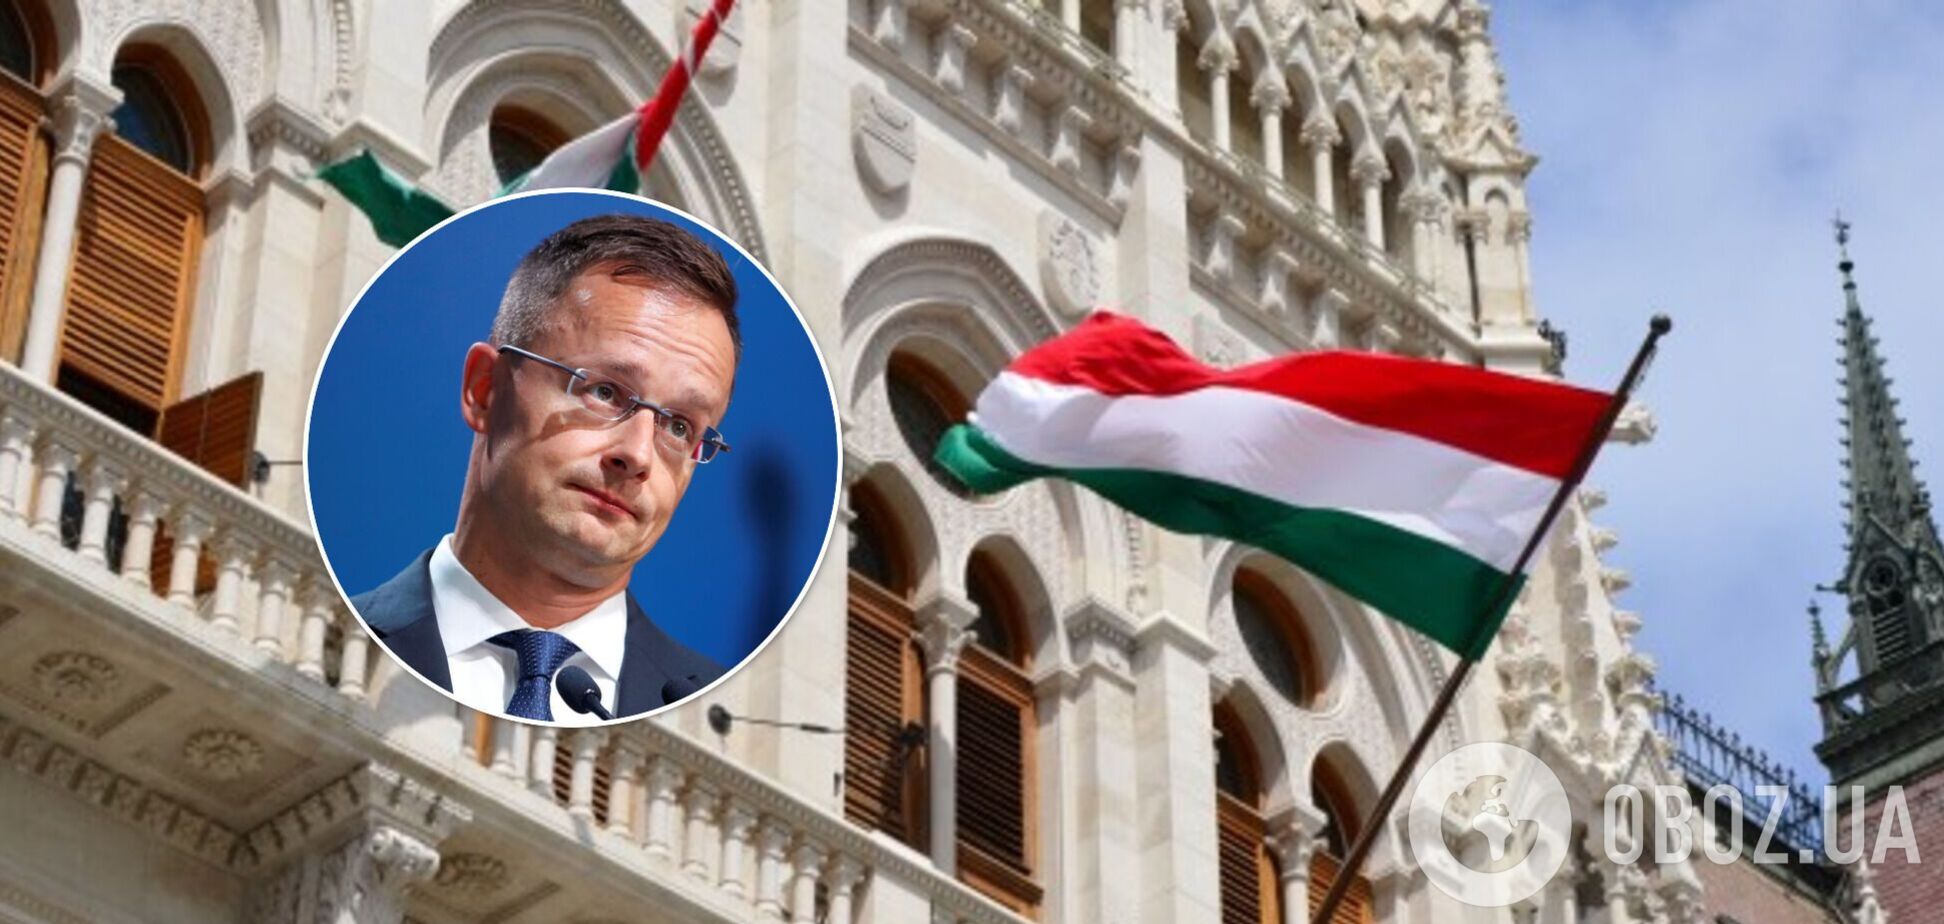 Венгерские власти пригрозили блокировать путь Украины в НАТО из-за критики контракта с Россией